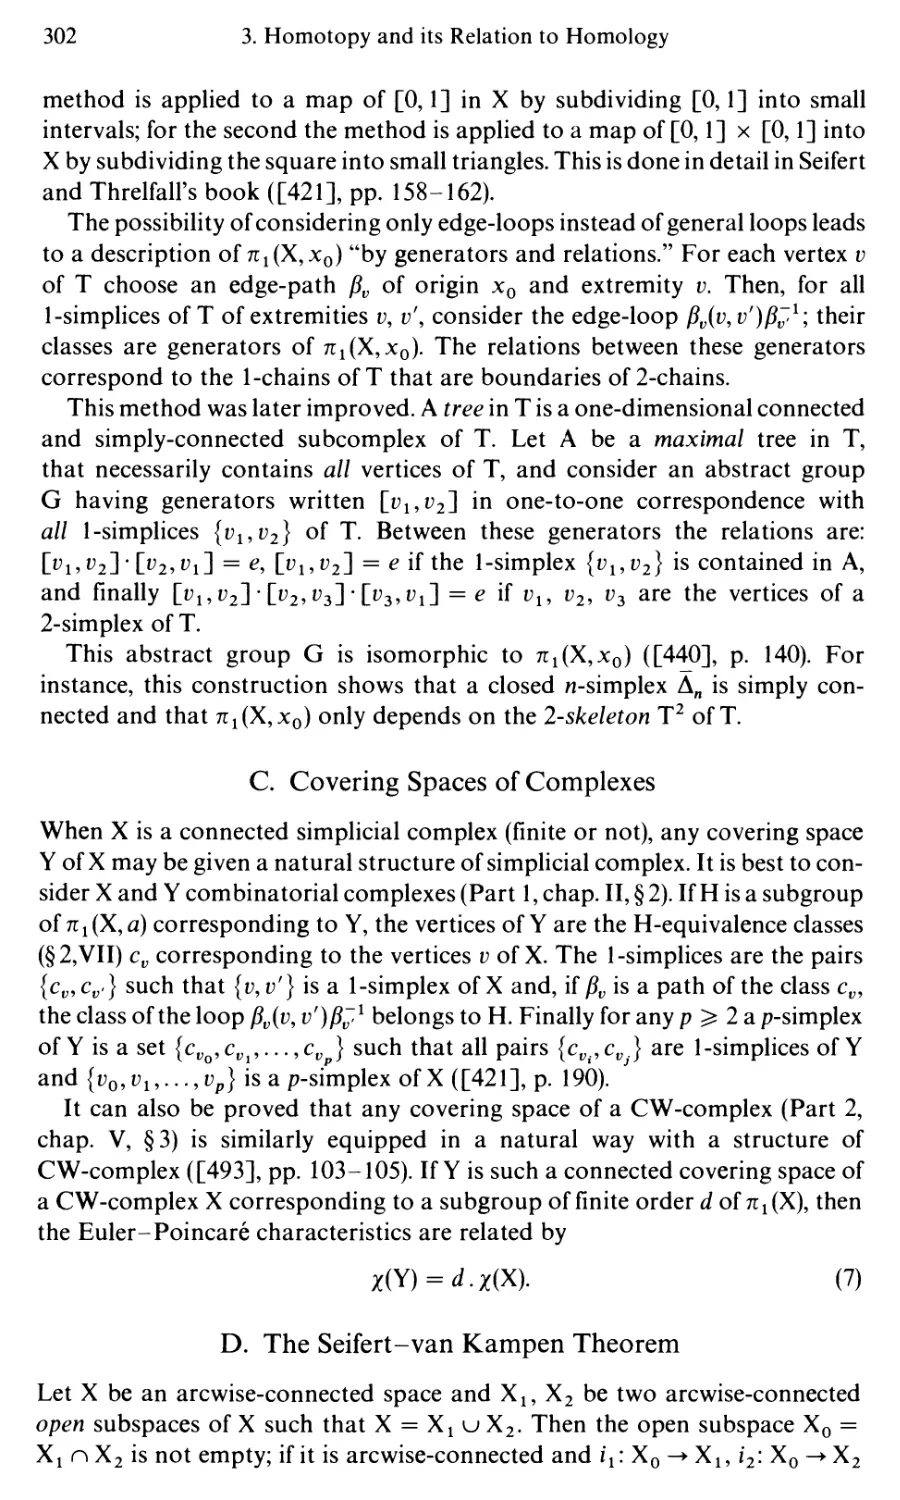 C. Covering Spaces of Complexes
D. The Seifert-van Kampen Theorem